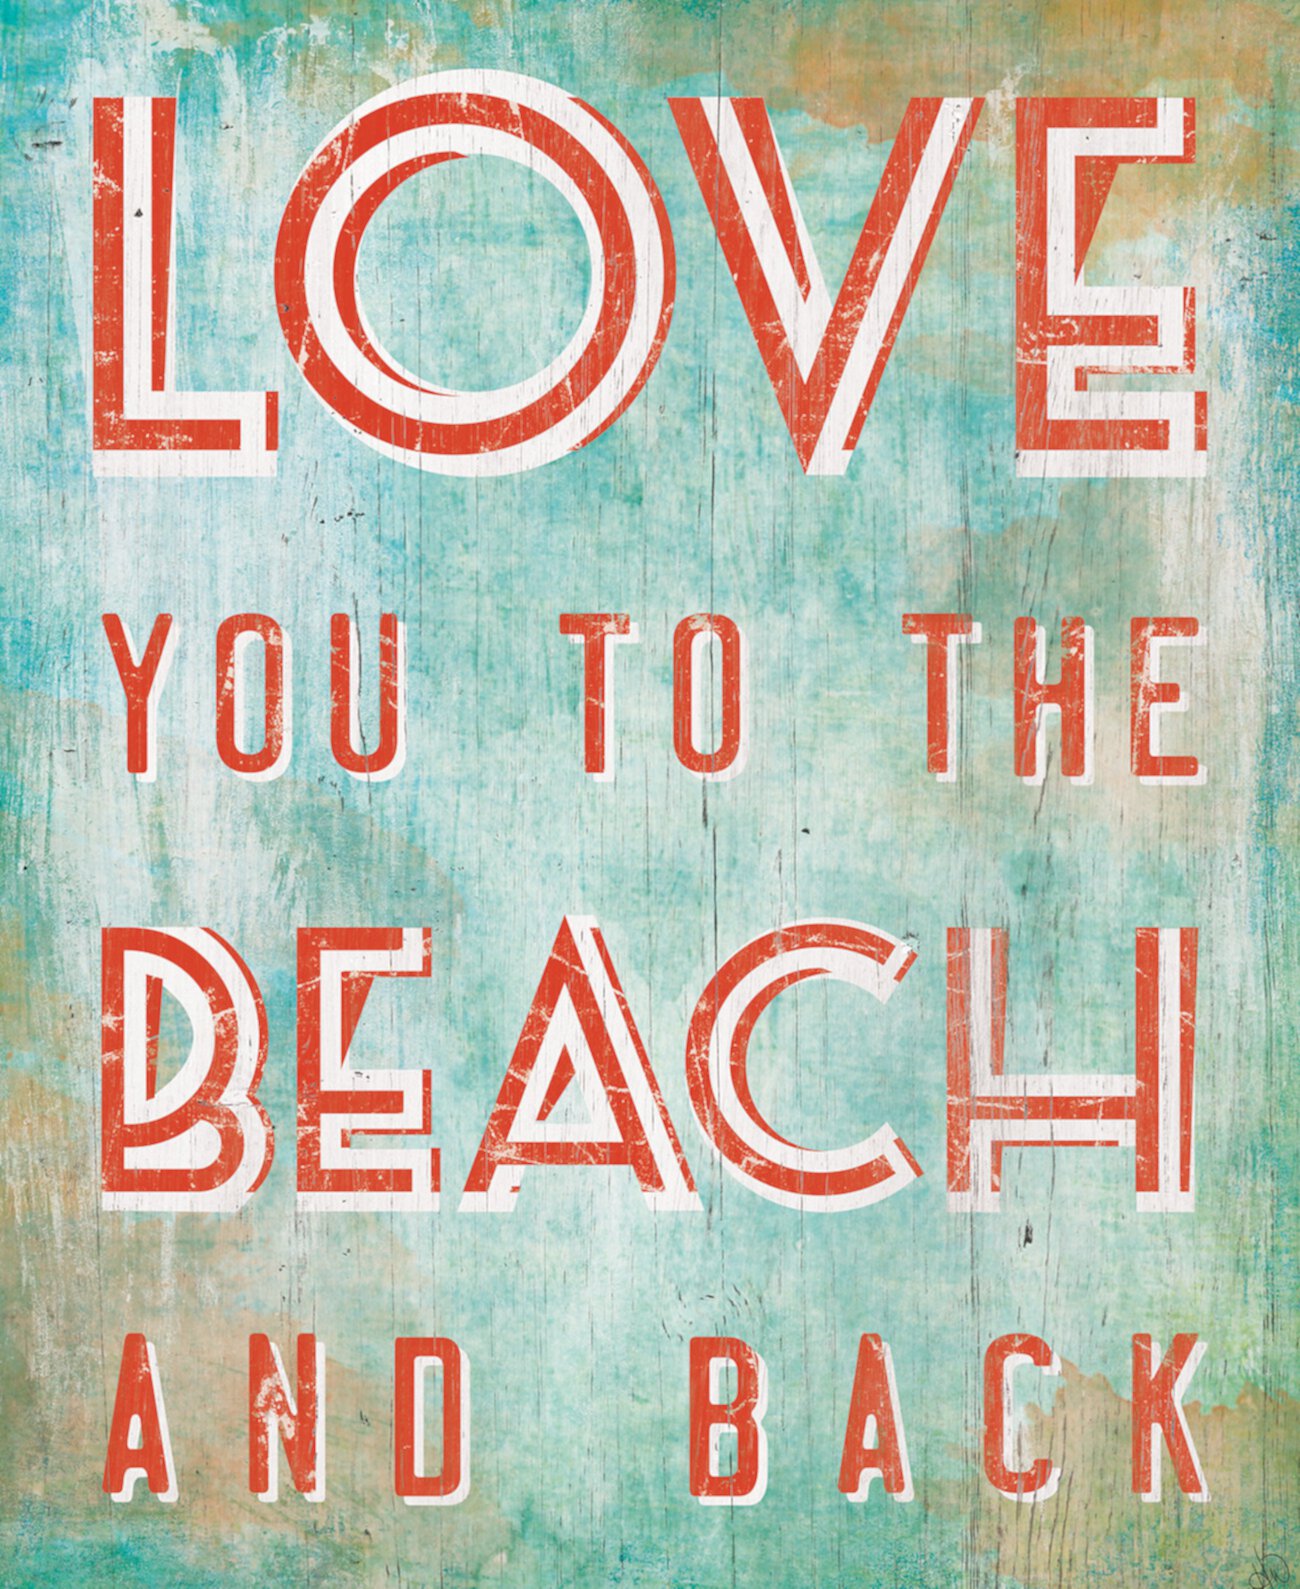 Цитата "Люблю тебя на пляж и обратно" 24 "X 36" Картина на холсте Creative Gallery